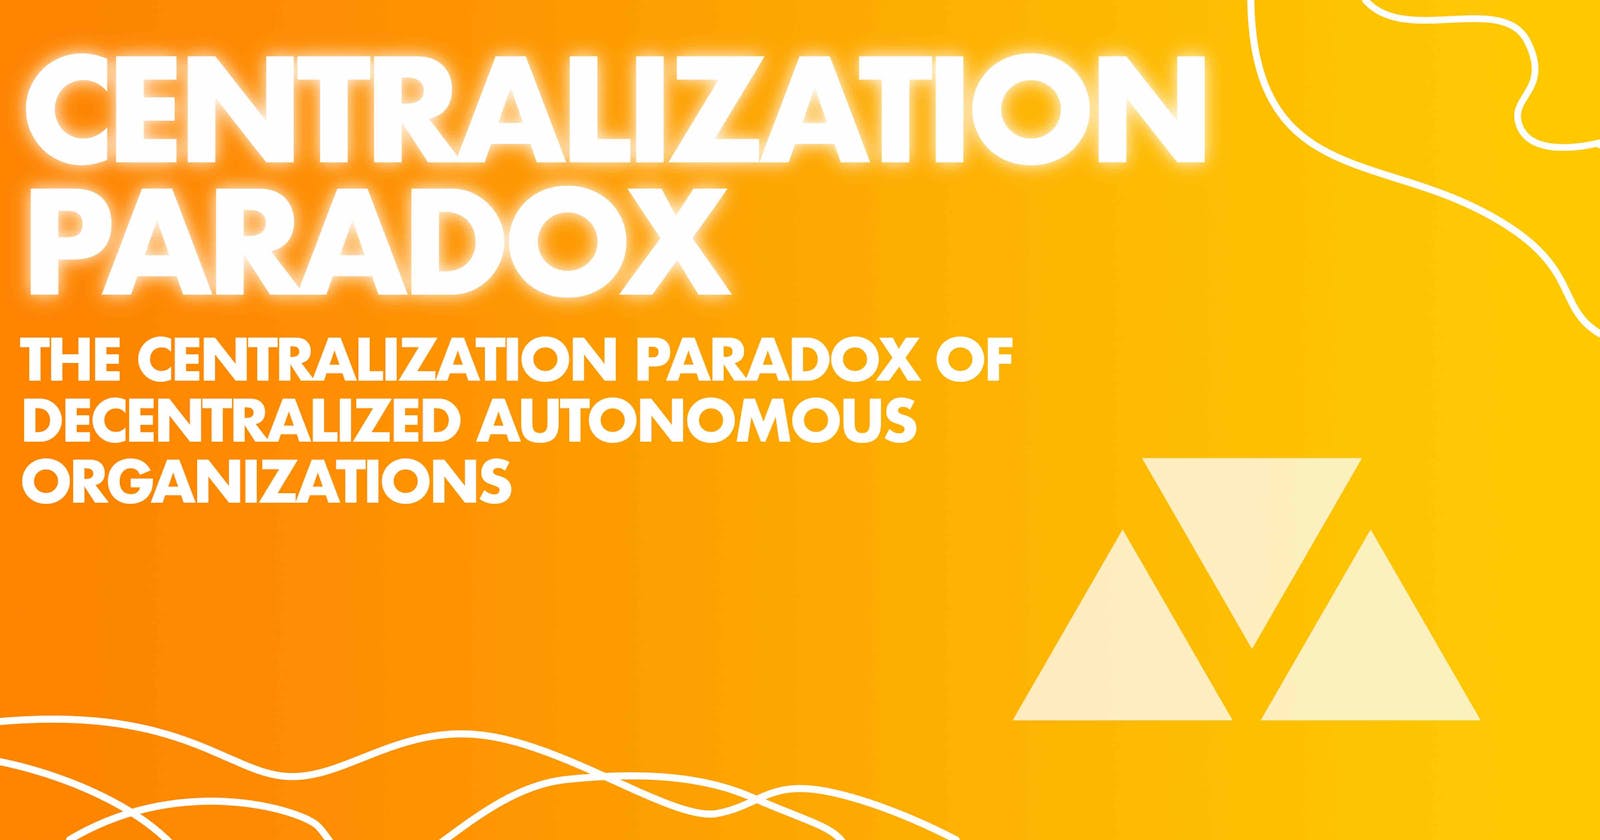 The Centralization Paradox of Decentralized Autonomous Organizations